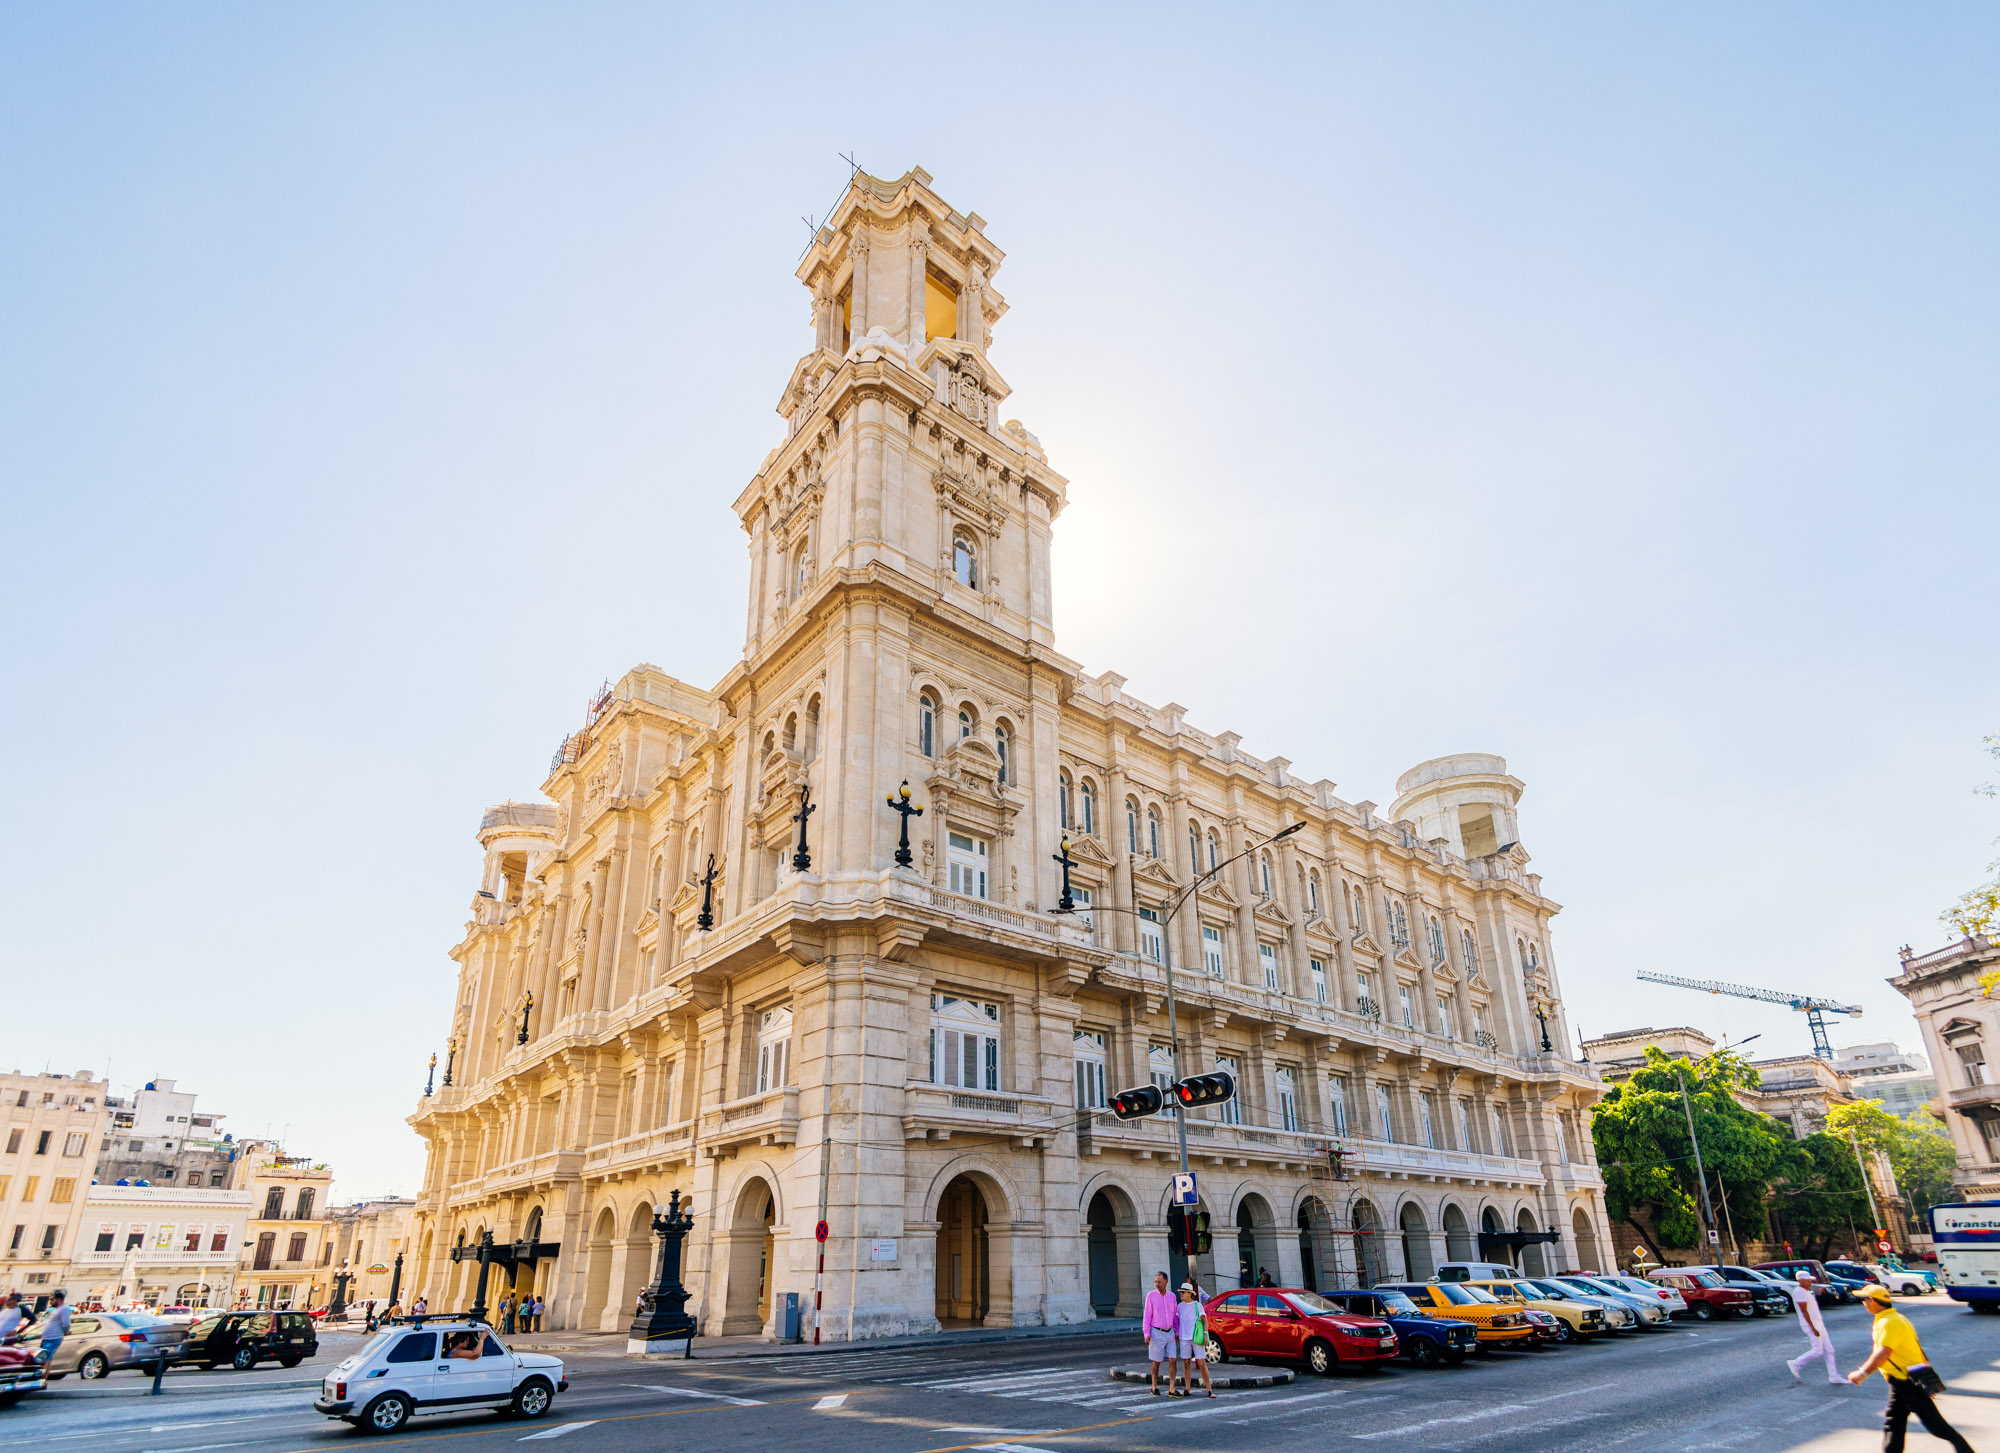 Museo Nacional de Bellas Artes in Havana - Cuba